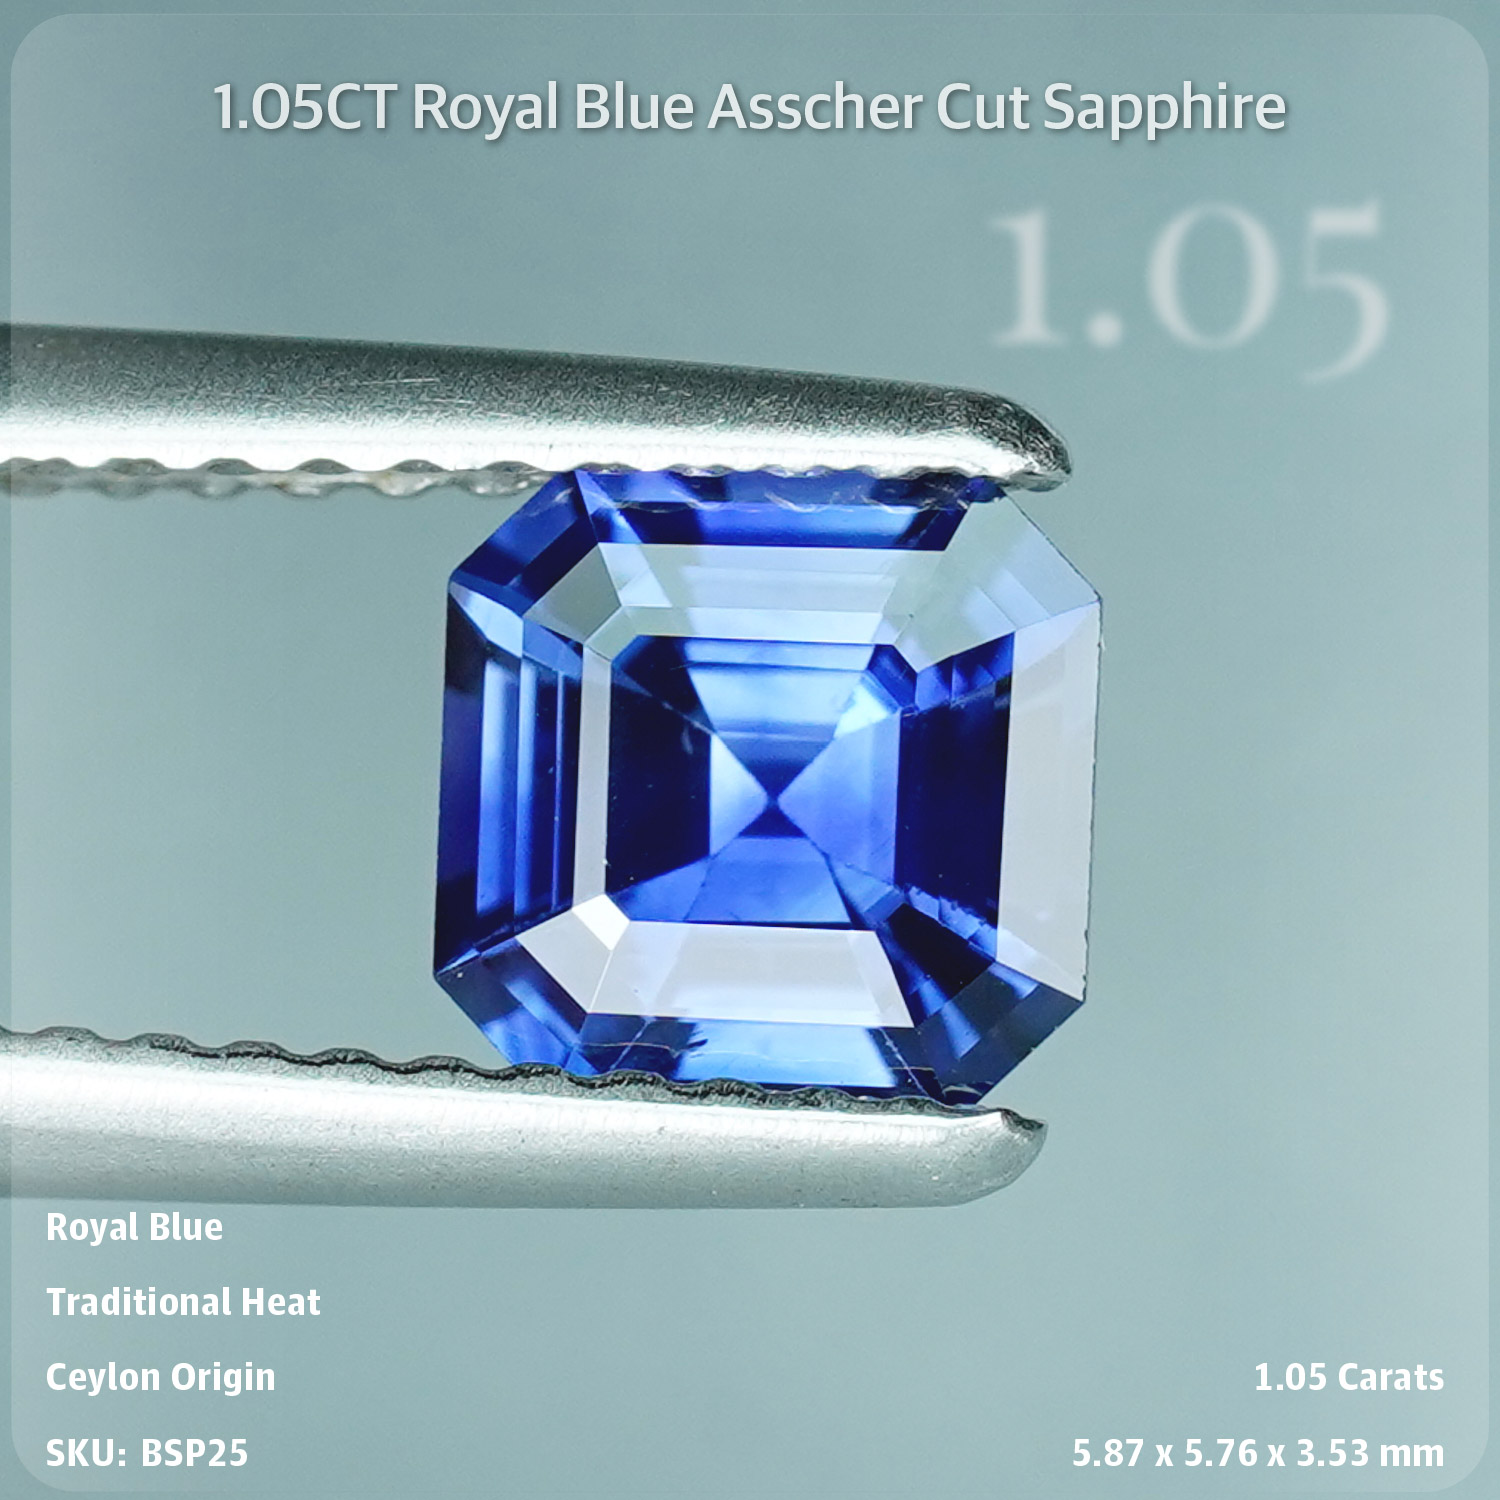 1.05CT Royal Blue Asscher Cut Sapphire